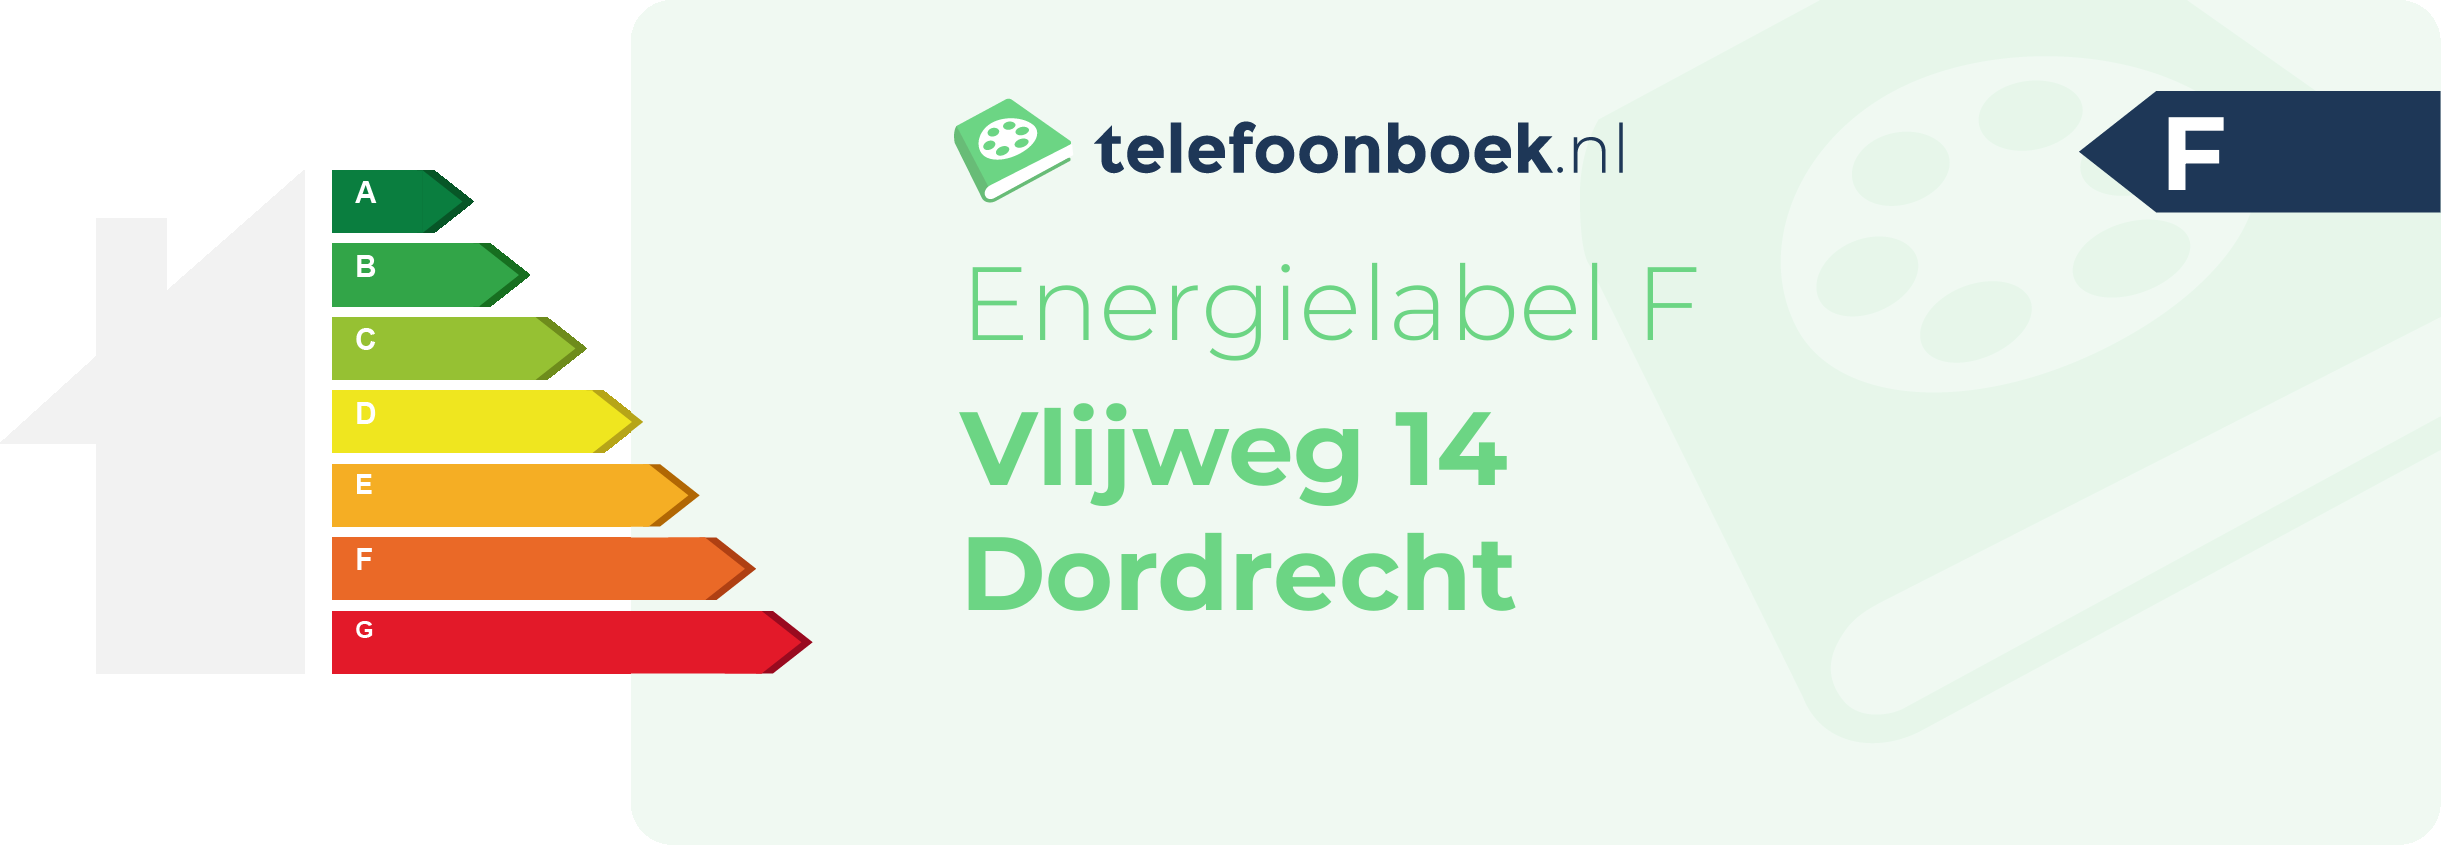 Energielabel Vlijweg 14 Dordrecht